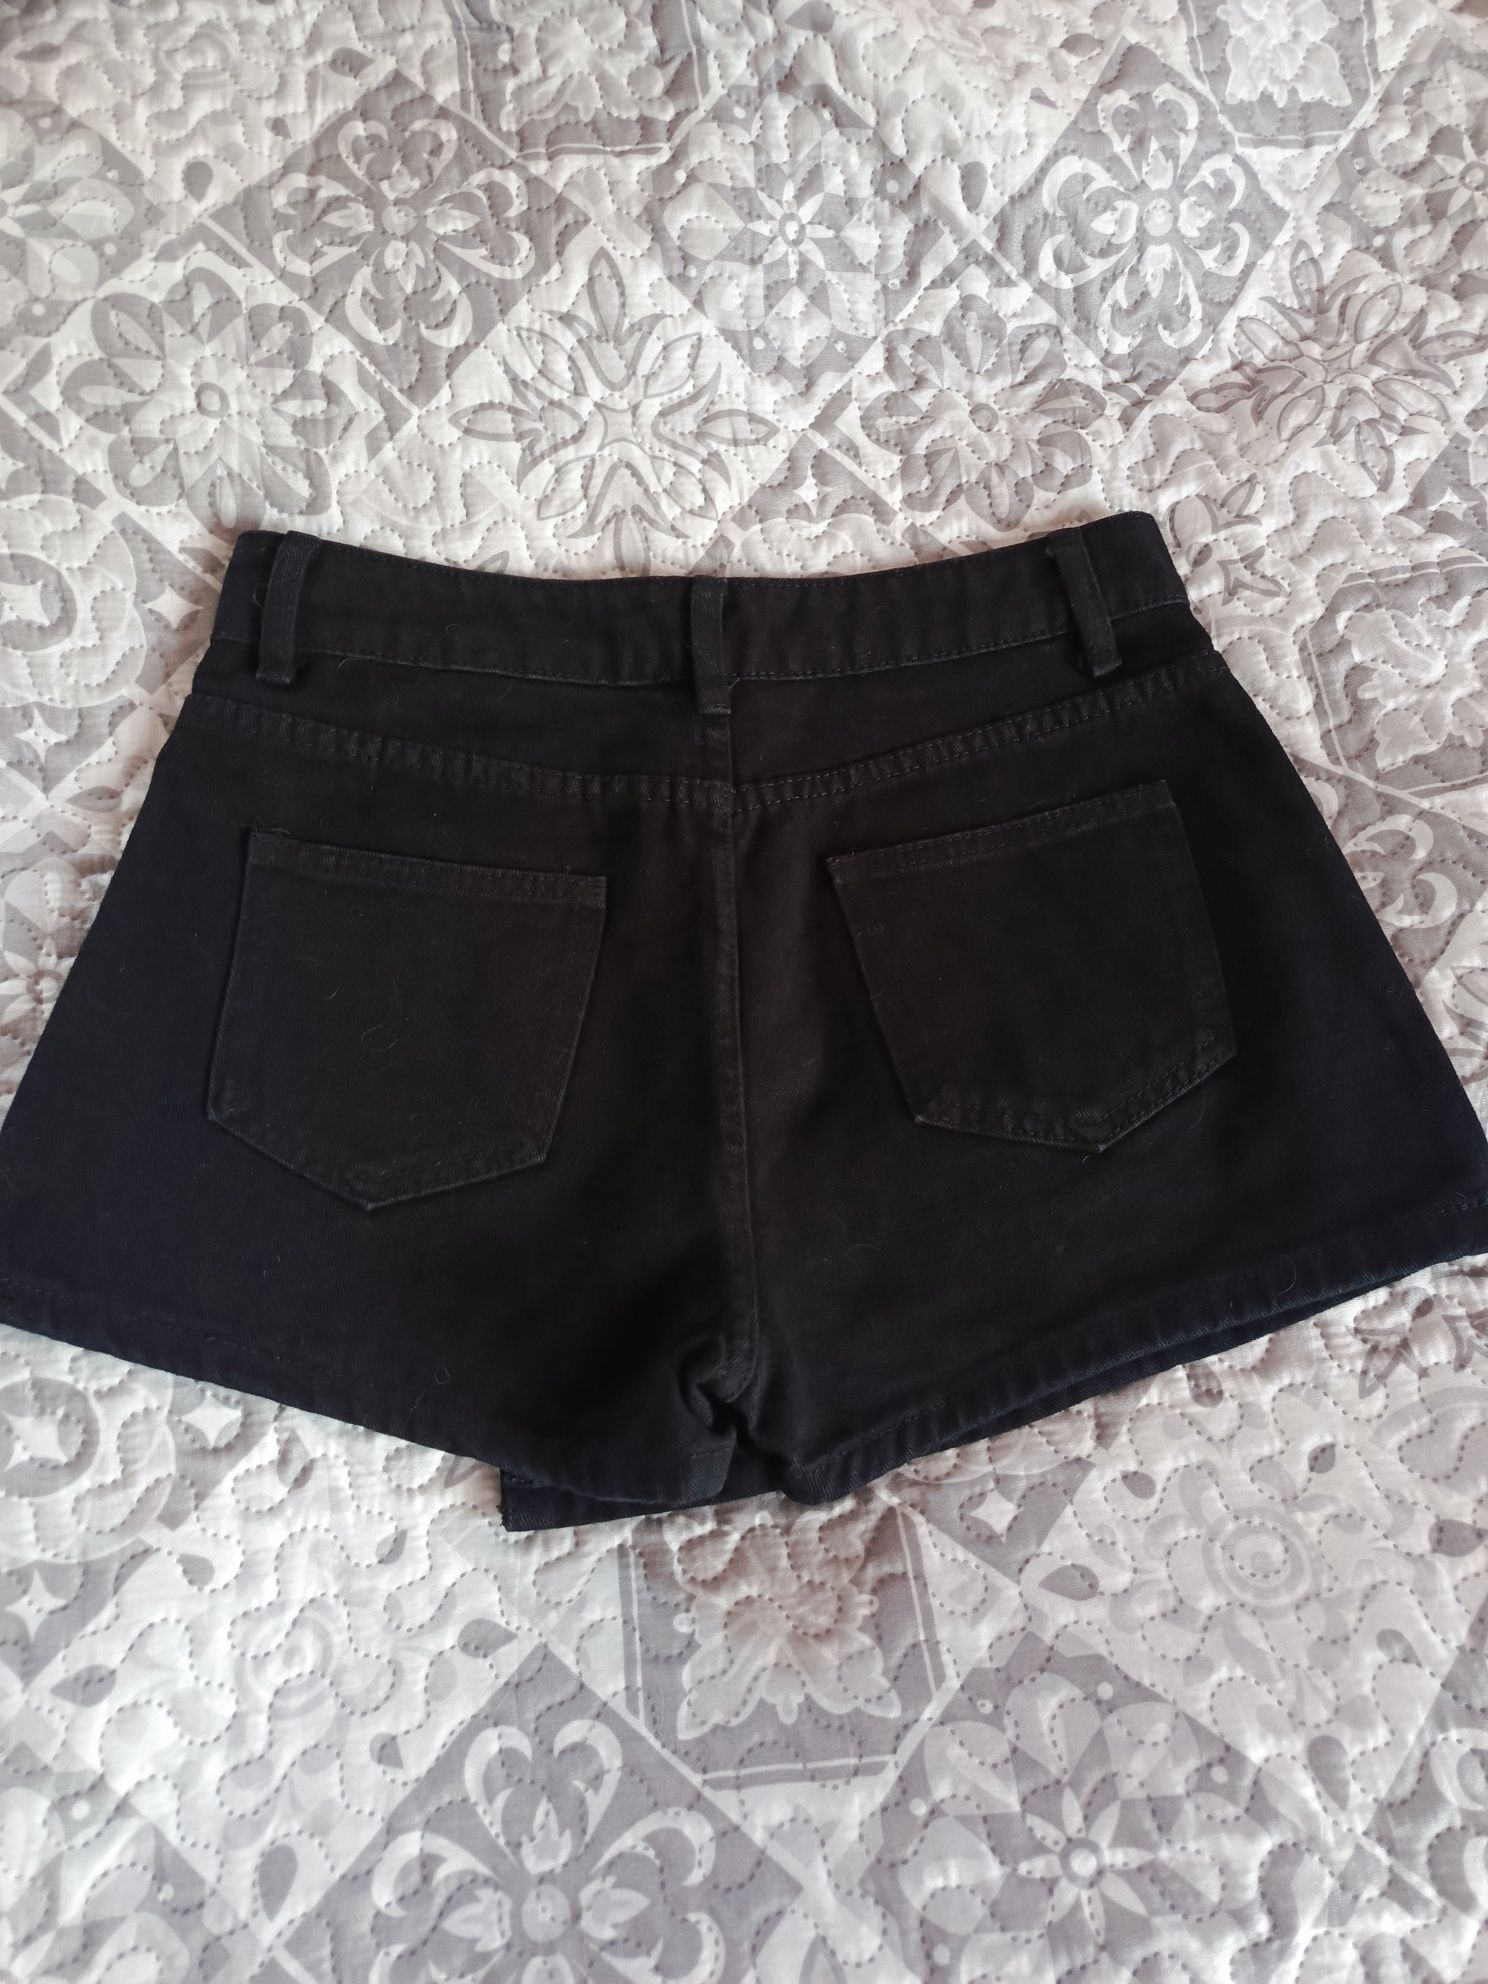 Spodenki spódnica czarne damskie Shein roz 36 S jeansowe jak nowe